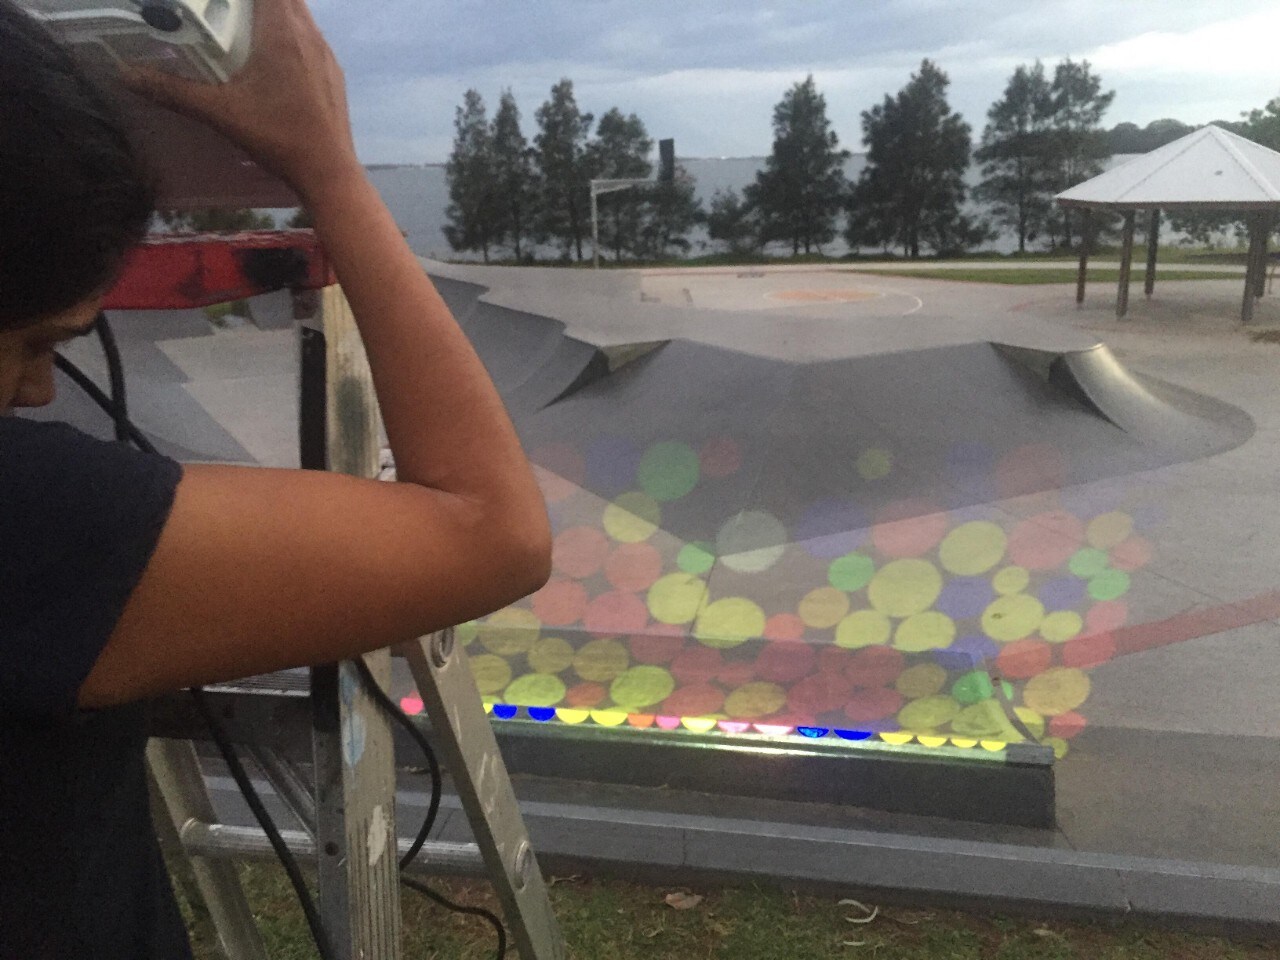 light installation at a skatepark